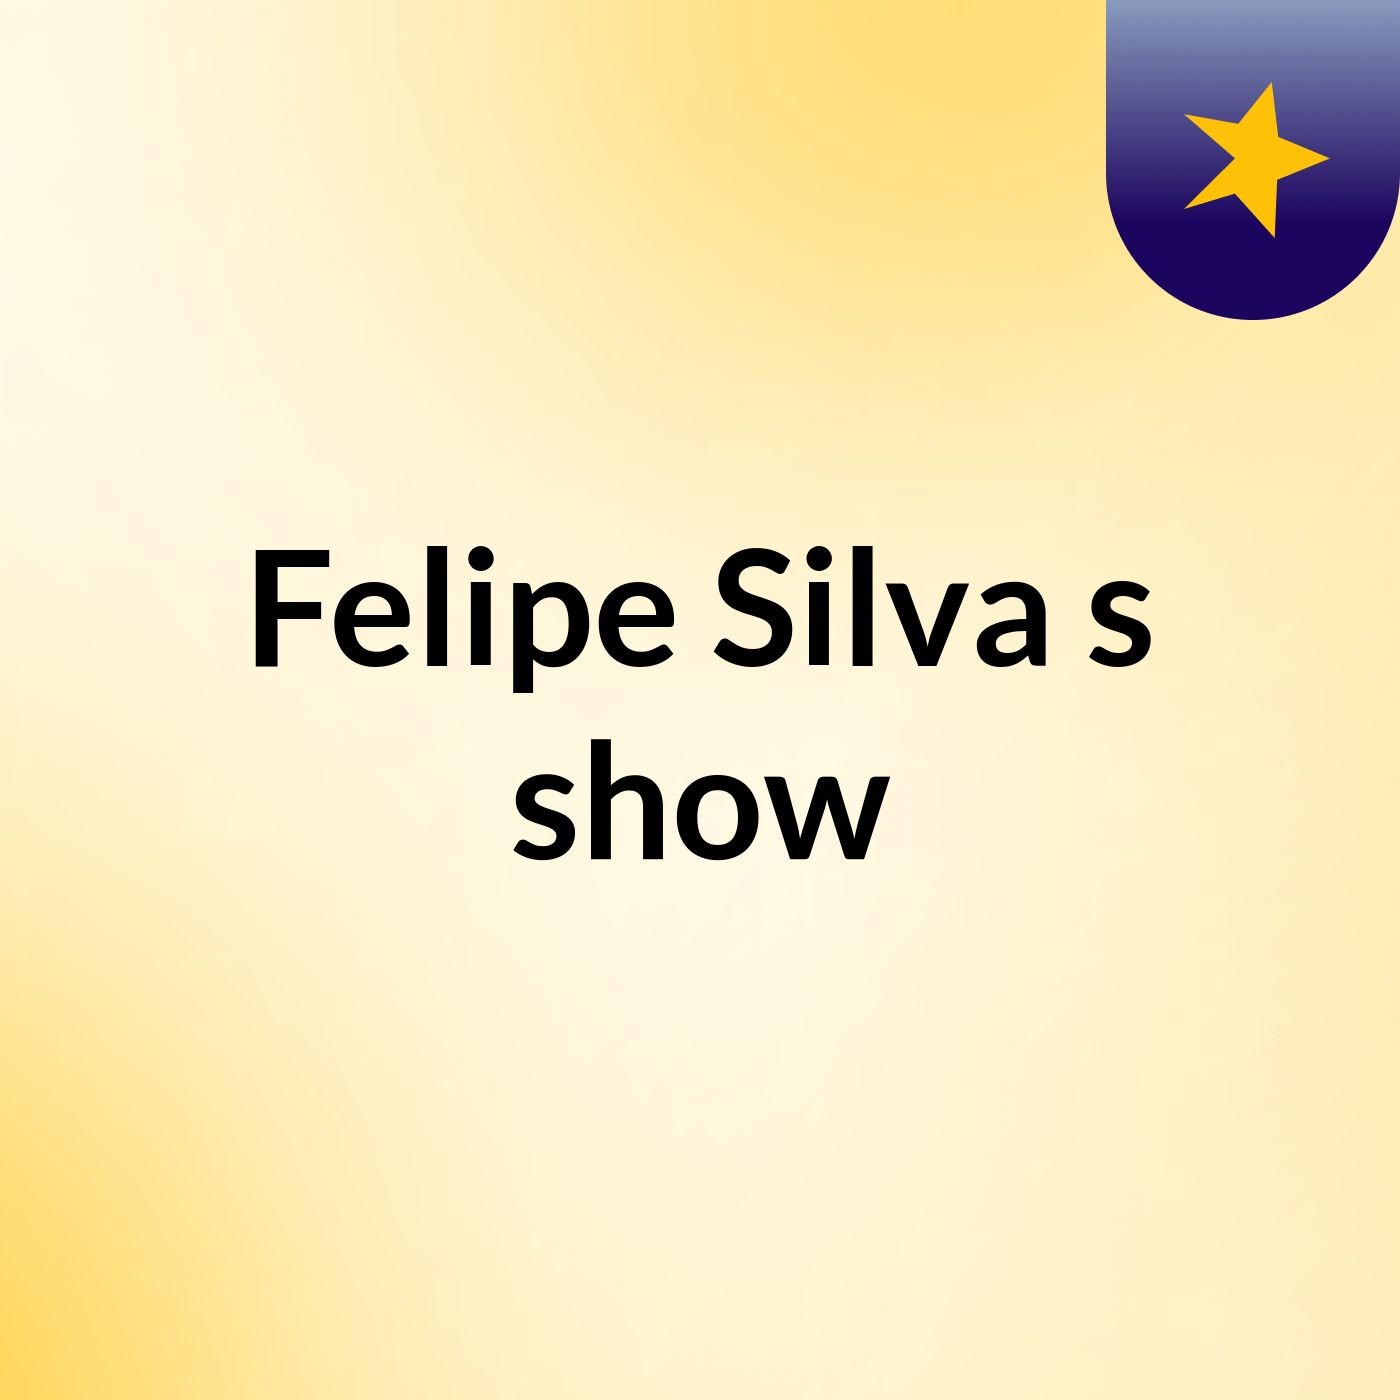 Felipe Silva's show